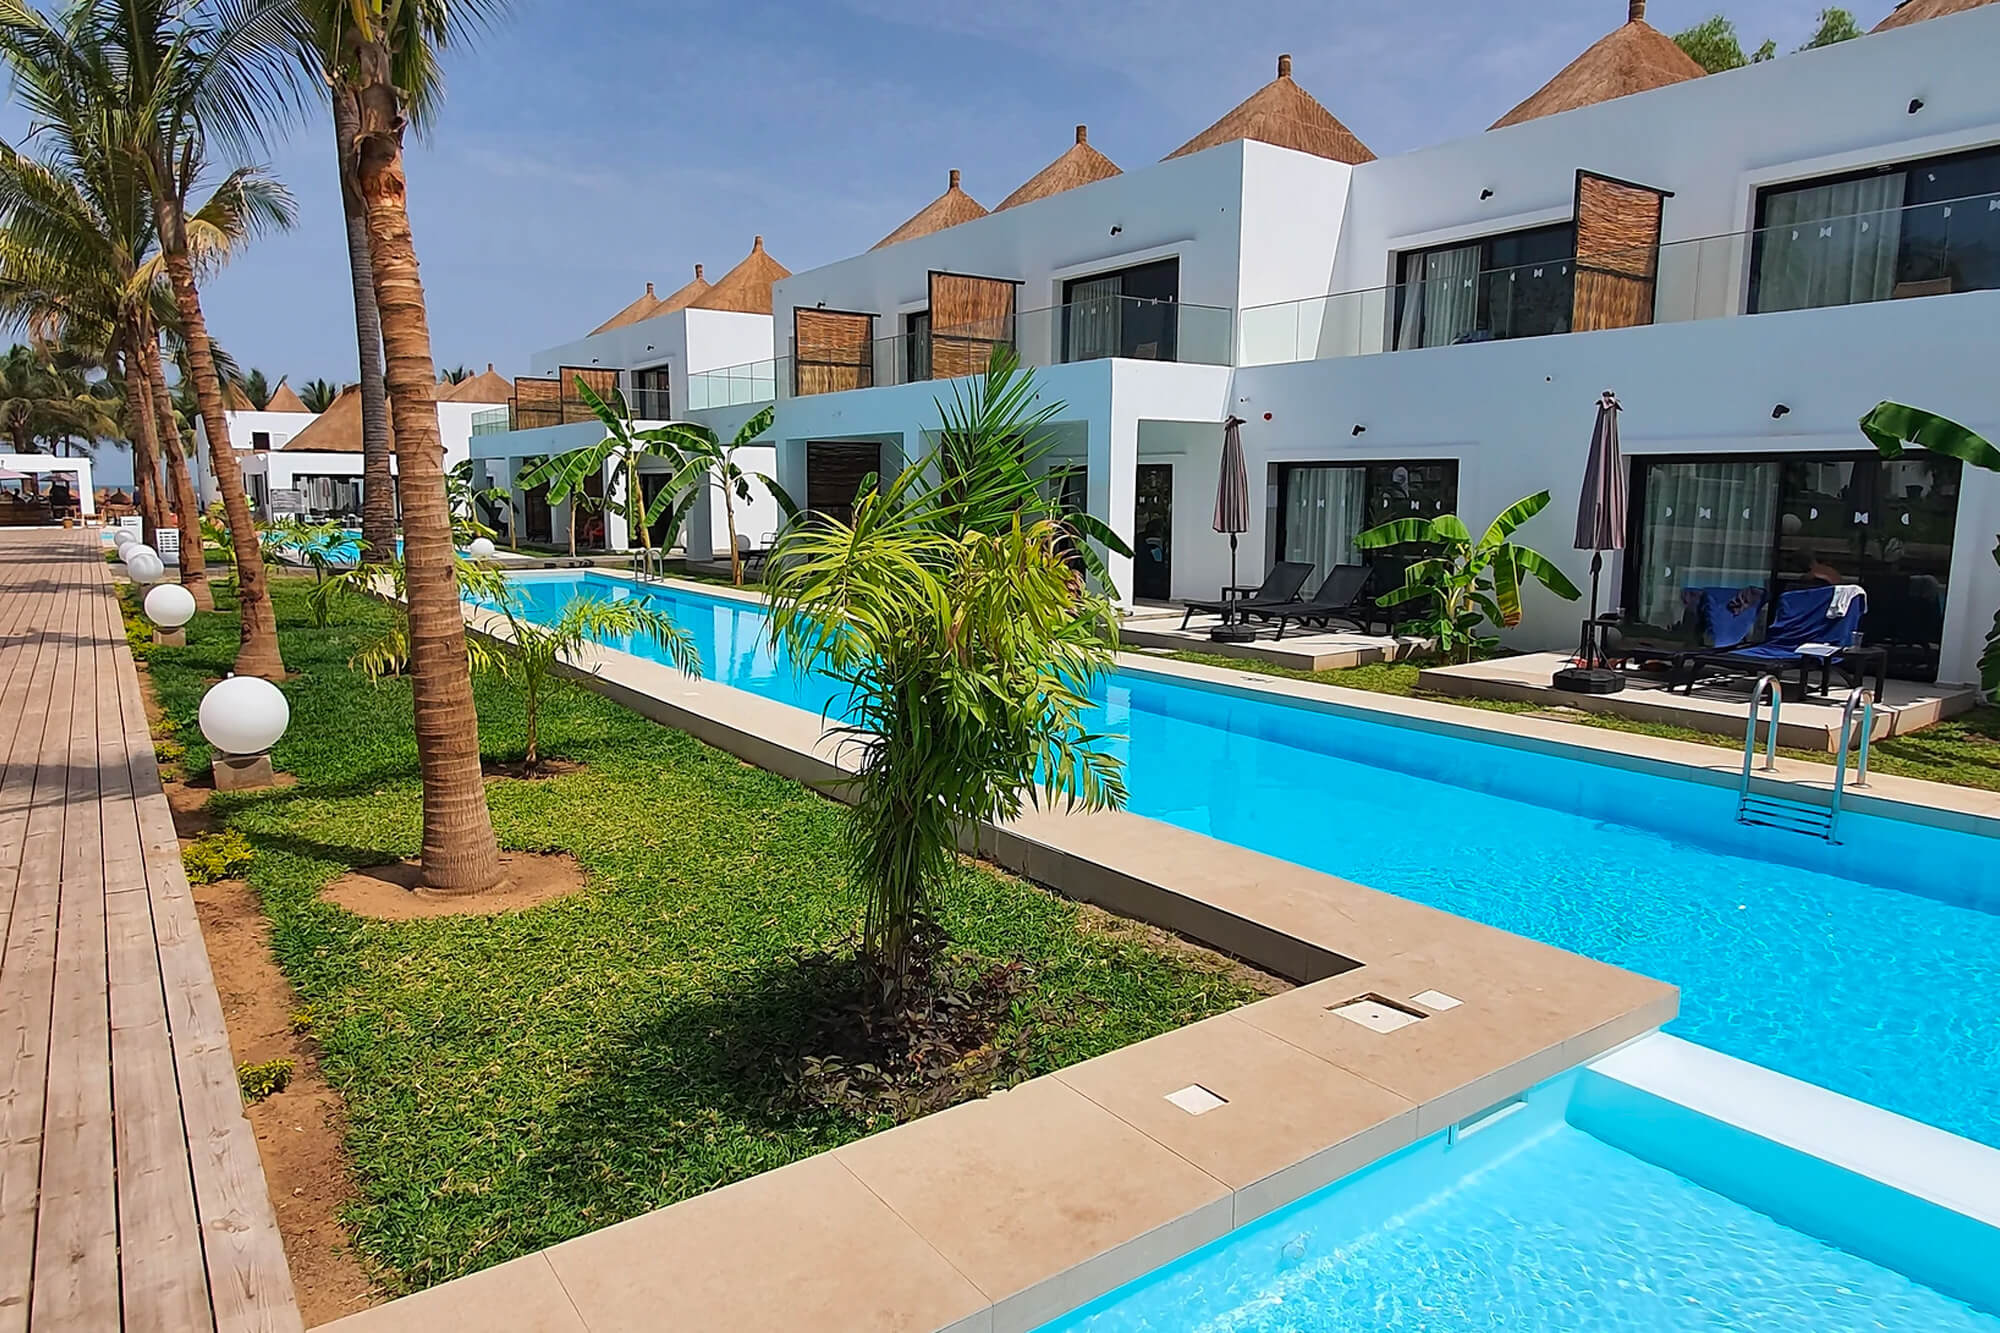 Zwembad van het Kalimba Beach Resort hotel in Gambia